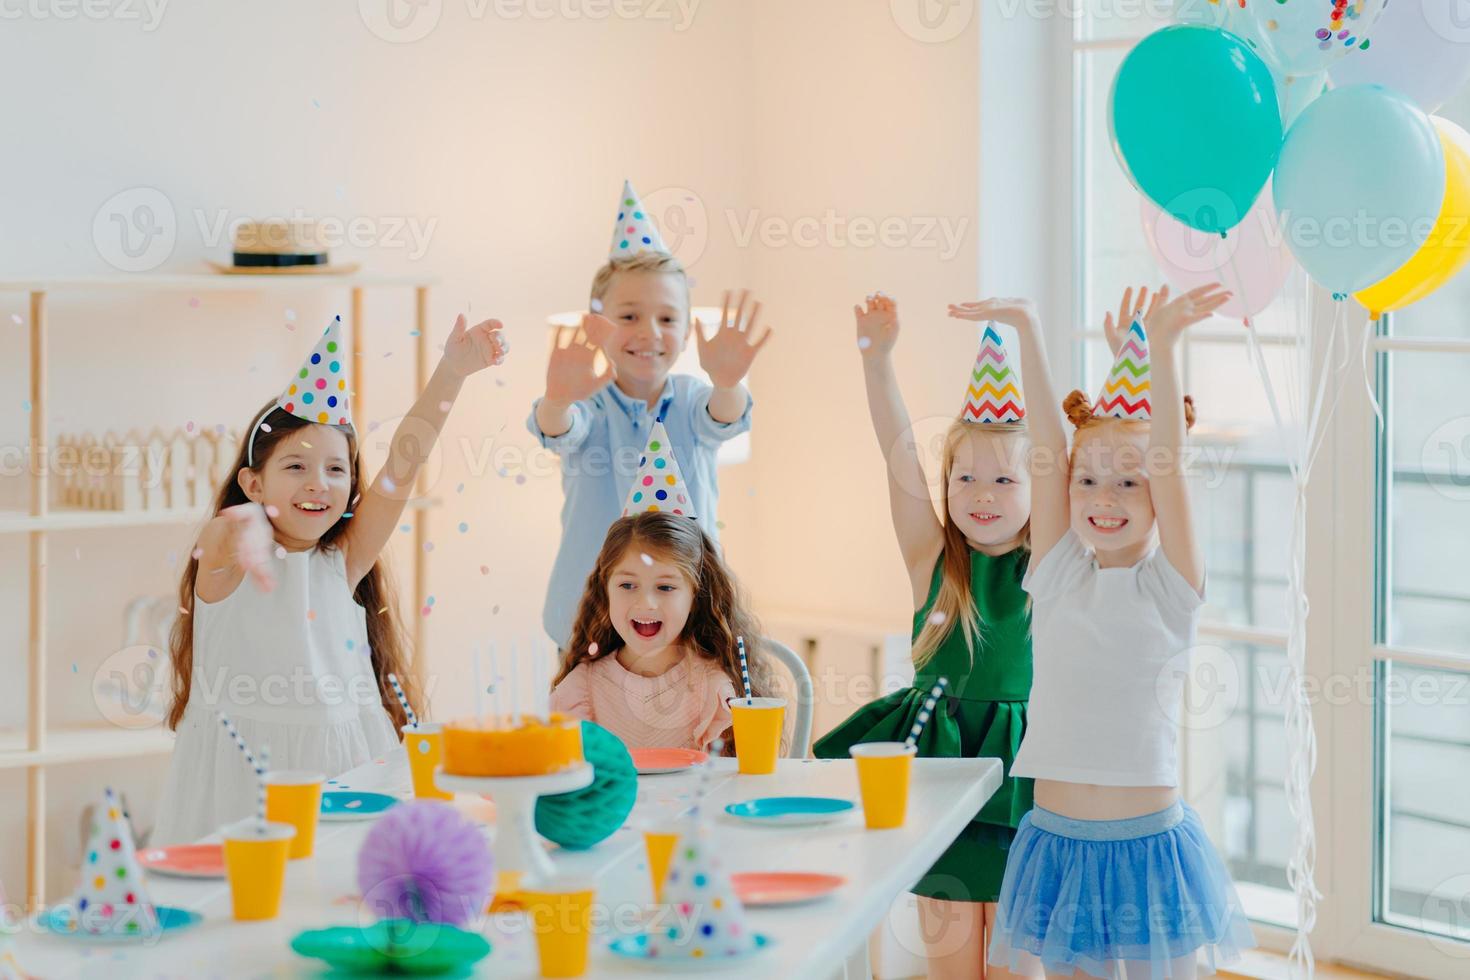 un groupe d'enfants heureux célèbrent leur anniversaire ensemble, jouent avec des confettis, portent des chapeaux de fête, posent près d'une table de fête dans une pièce décorée avec des ballons, ont des expressions ravies, profitent de la vie photo